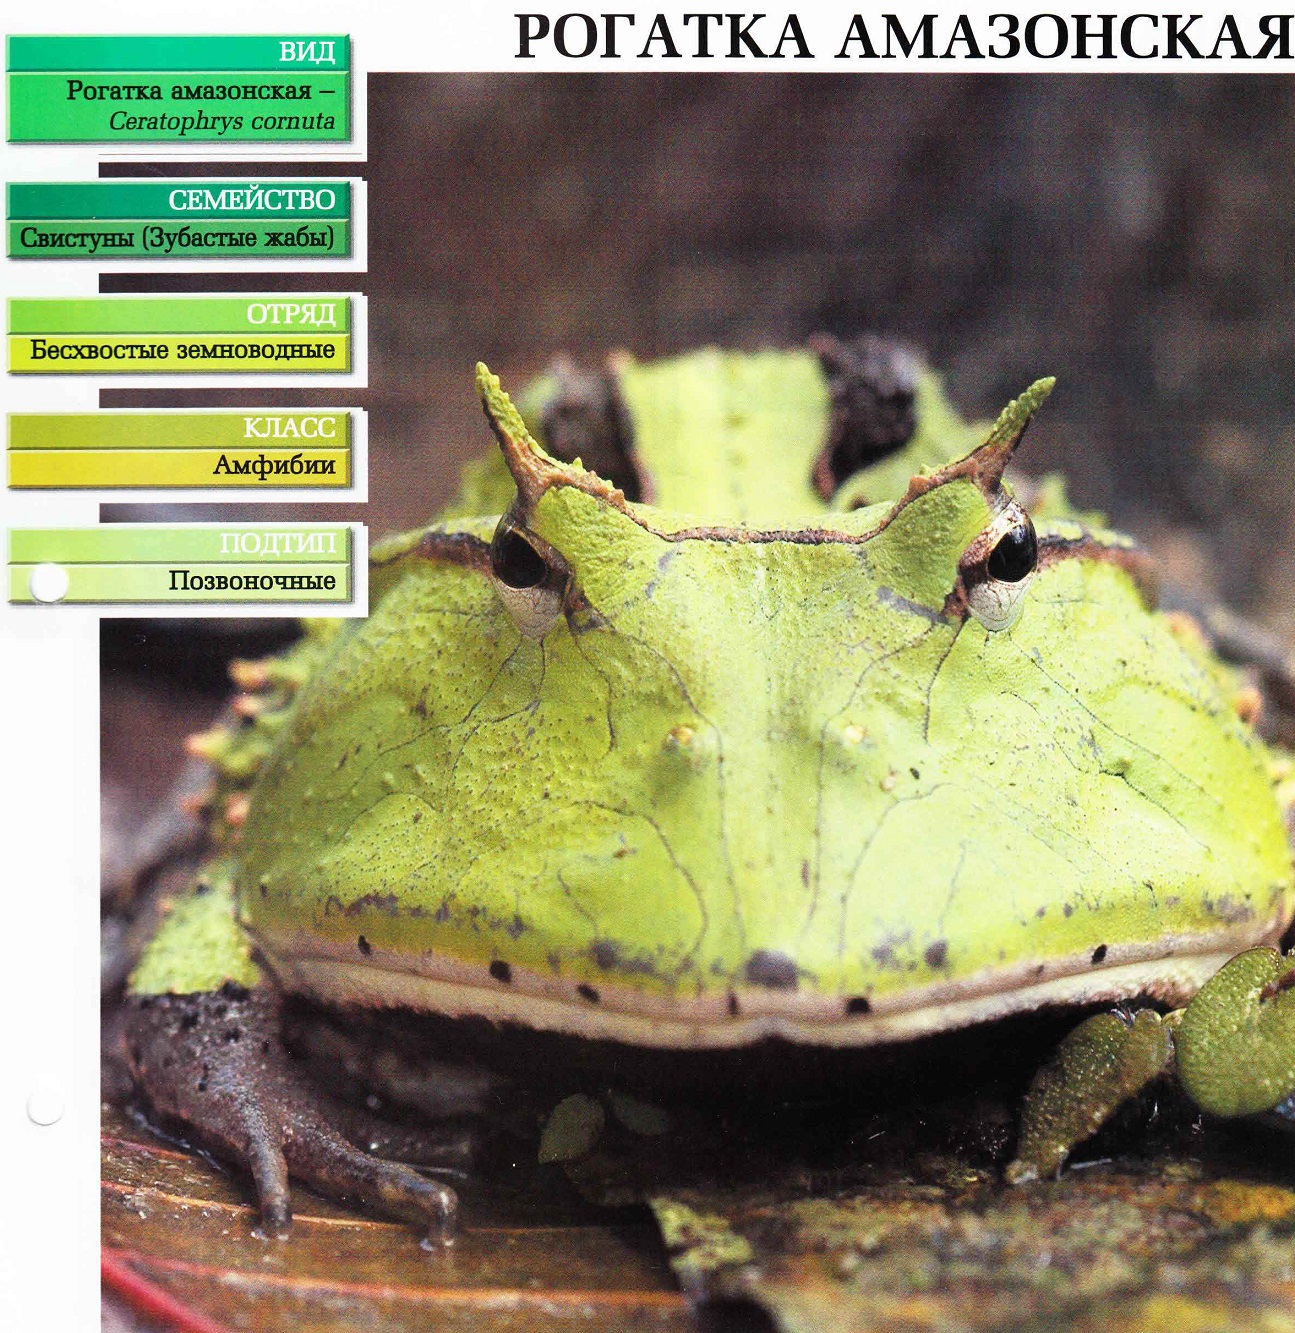 Систематика (научная классификация) рогатки амазонской. Ceratophrys cornuta.